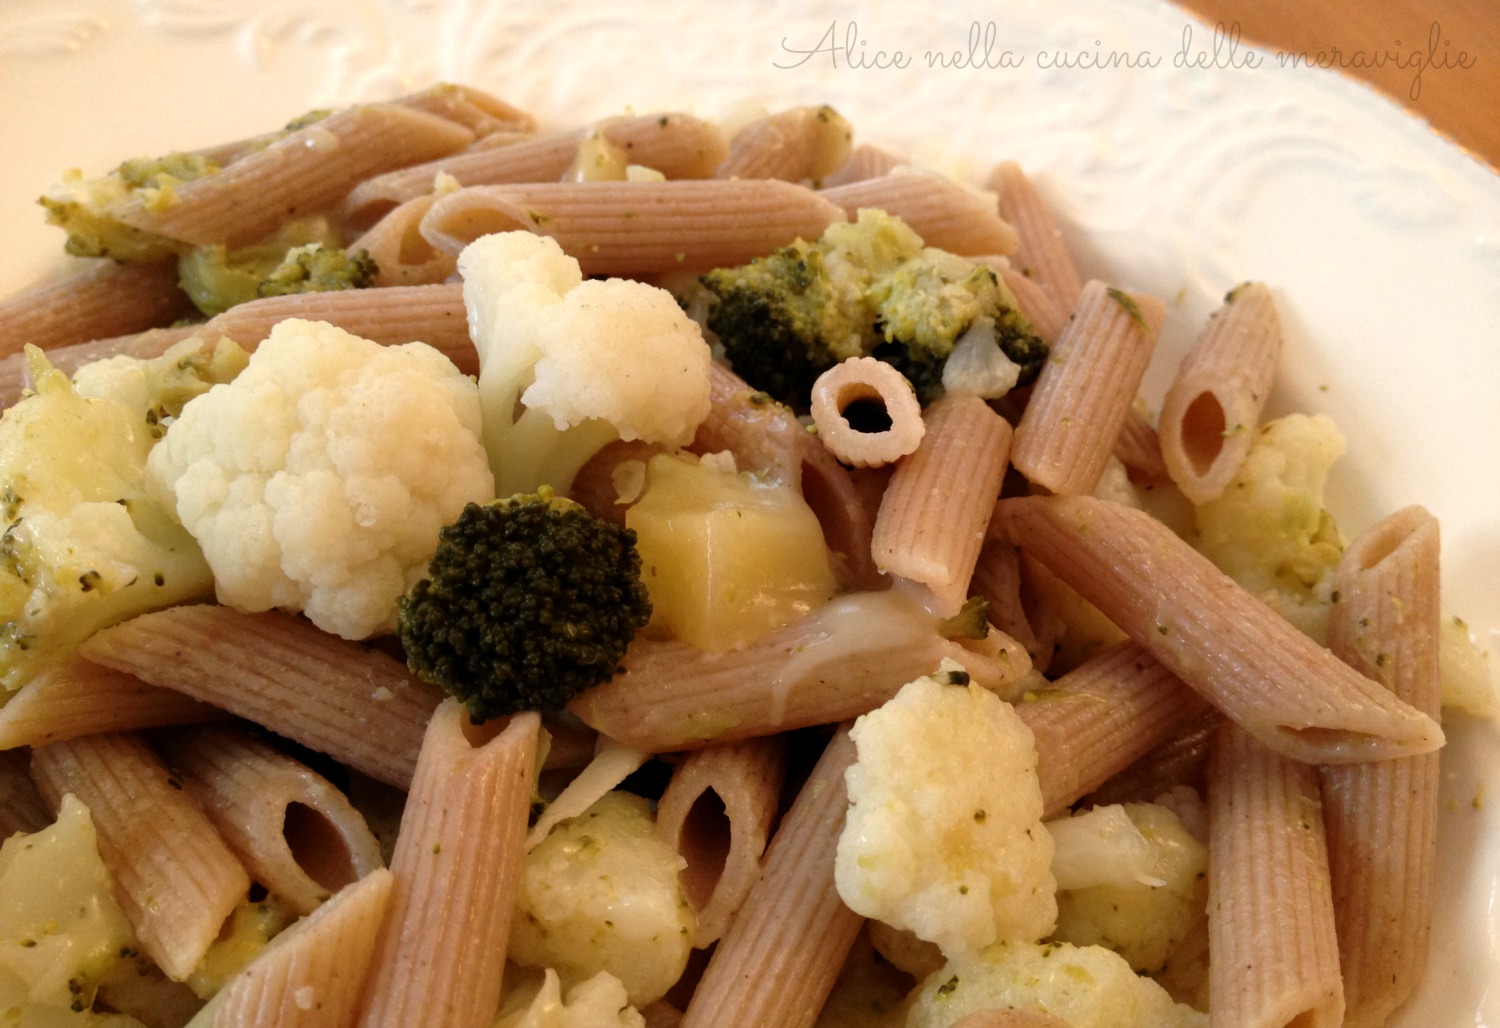 Pasta con cavolfiore, broccoli e formaggio nostrano Ricetta primo piatto vegetariano Alice nella cucina delle meraviglie